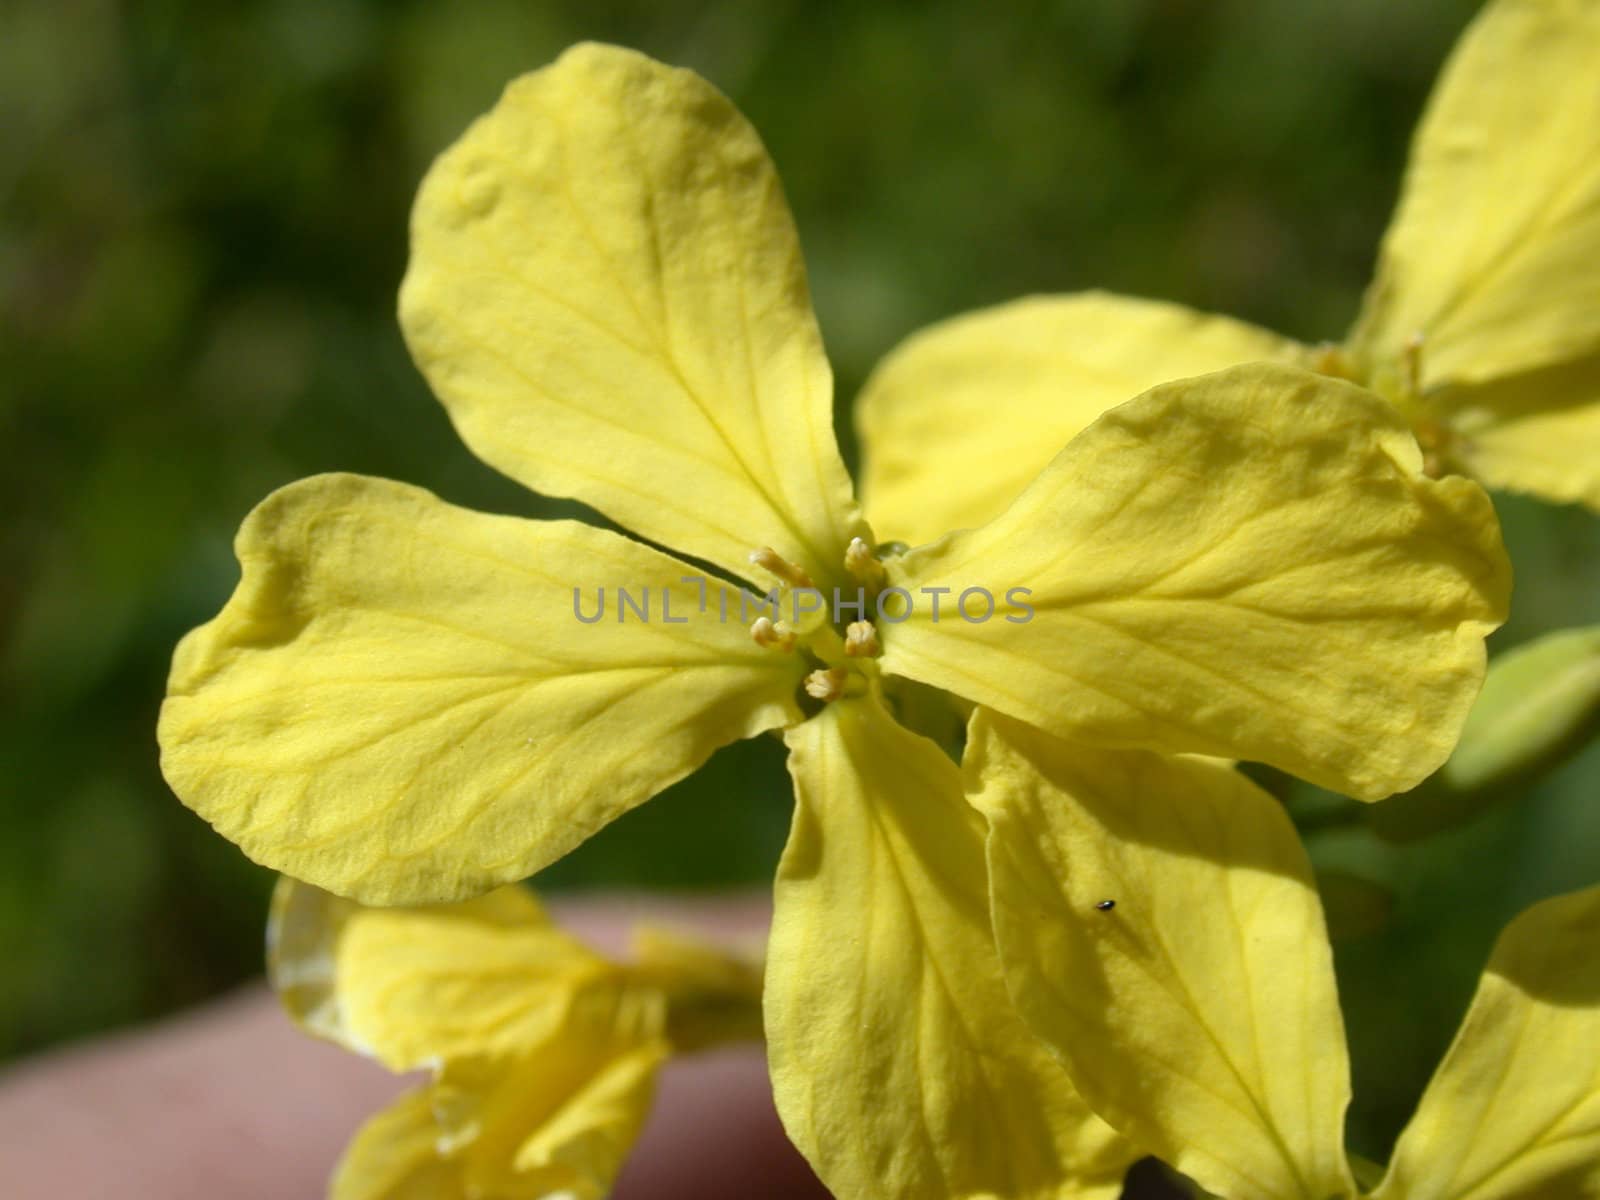 The yellow flower macro